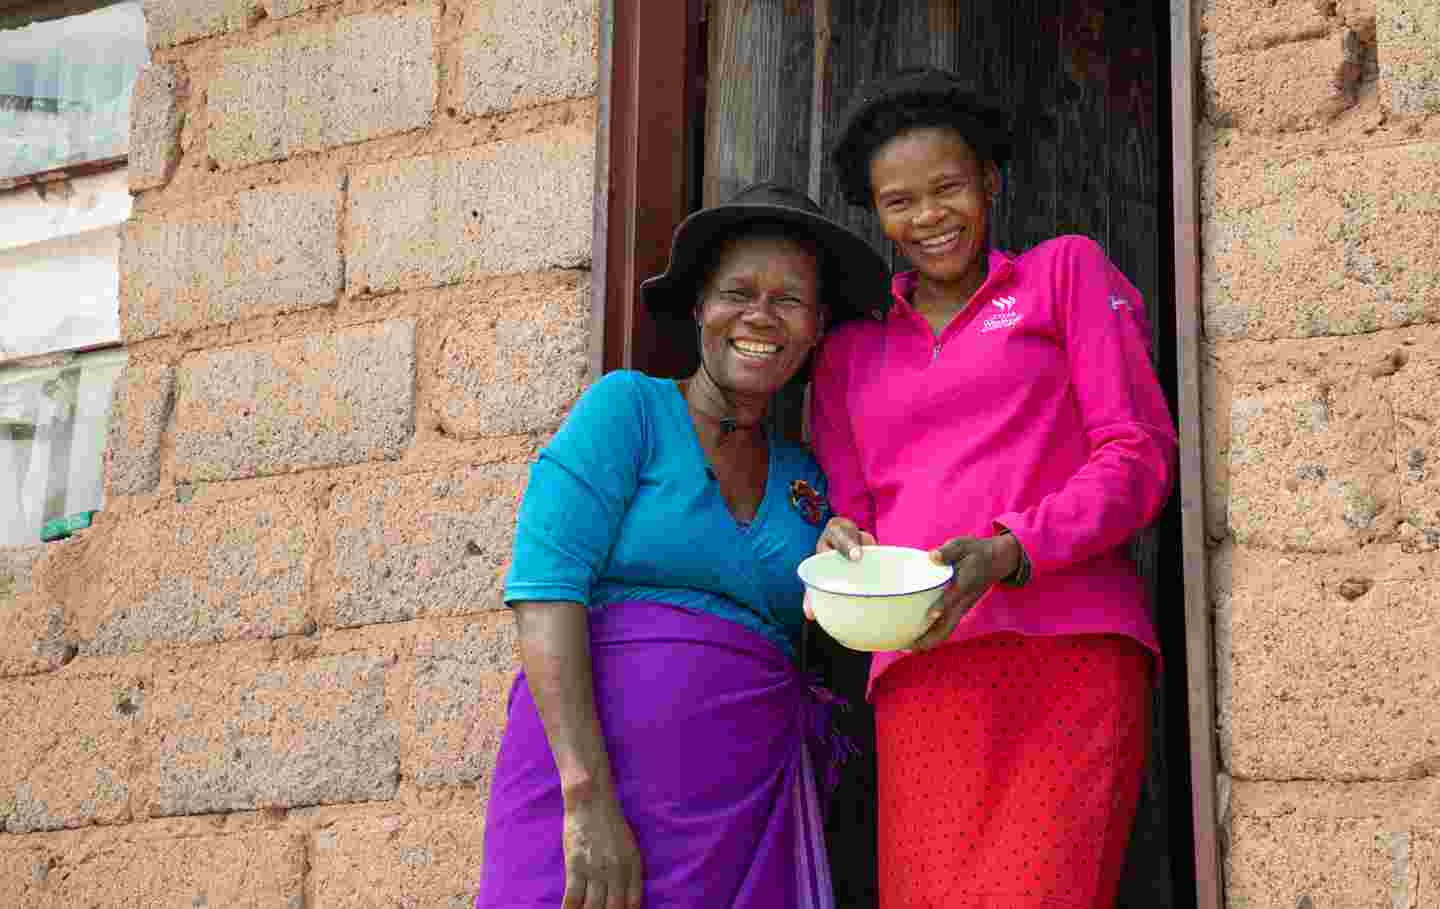 Kaksi hymyilevää ihmistä kotitalonsa edessä Eswatinissa.